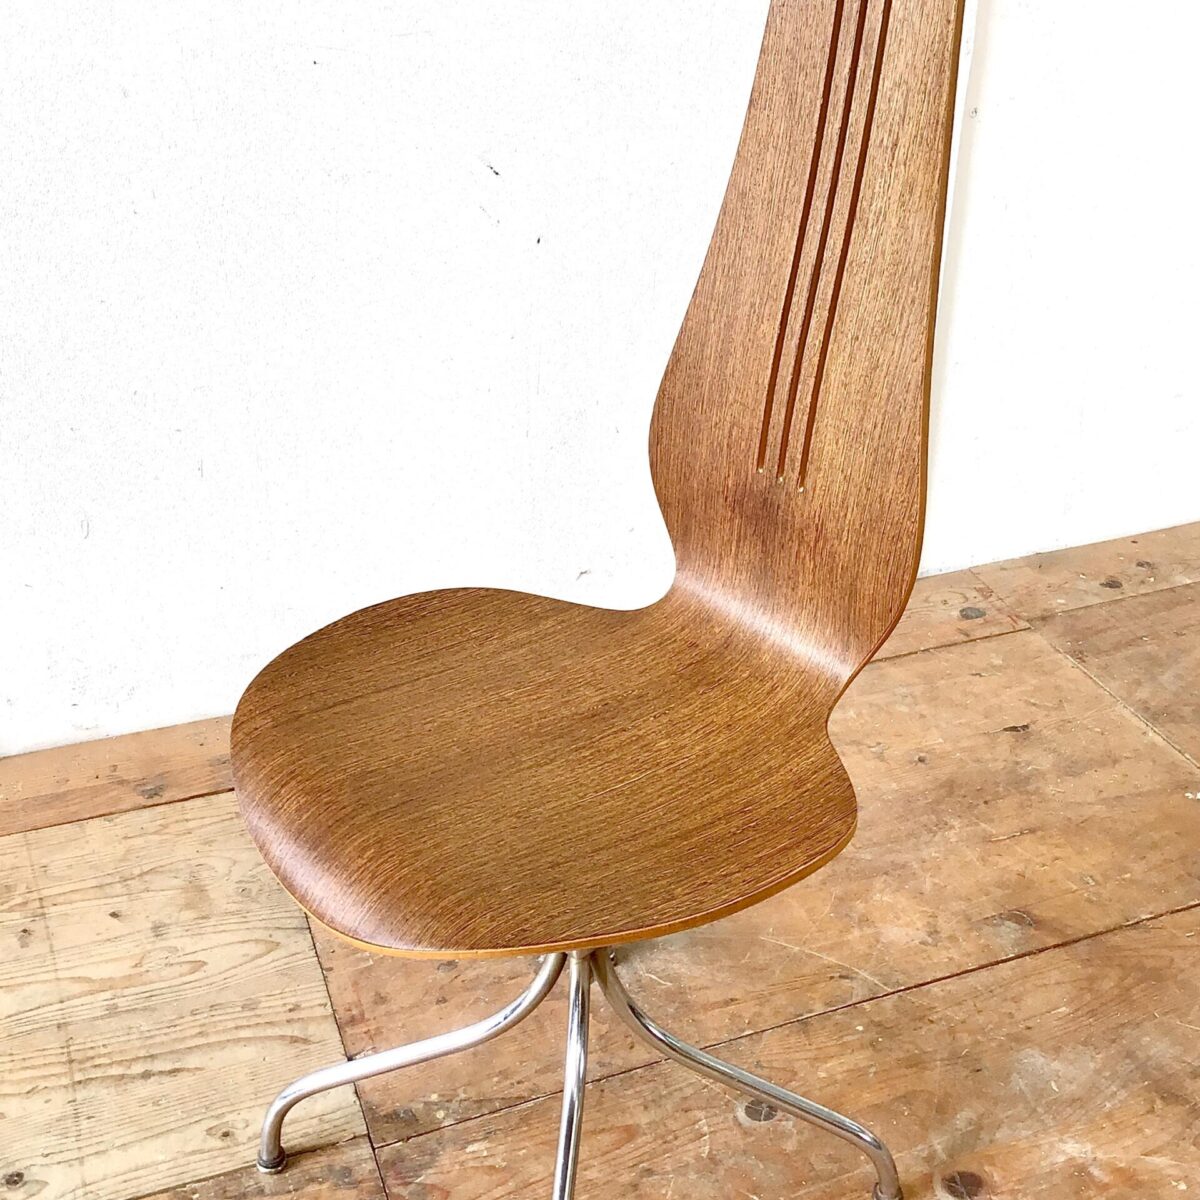 Midcentury Esszimmer Stühle von Theo Häberlin aus den 70er Jahren. Sitzhöhe 45cm gesamt Höhe ca. 106cm. Die Formsperrholz Sitzschale, mit hohem Rücken, ist angenehm zwischen den Schulterblättern. Diese Stühle heben sich vorallem durch die Höhe von anderen Stühlen ab. Die Lehne überragt deutlich die Höhe einer Tischkante. Das Metall Untergestell ist verchromt, stabil und hochwertig ausgeführt. Der kleine Metall Würfel, durch den die Stuhlbeine verlaufen, erinnert mich an Art déco Möbel Elemente. Einer der Stühle unterscheidet sich deutlich durch die lebhafte Holzmaserung. 